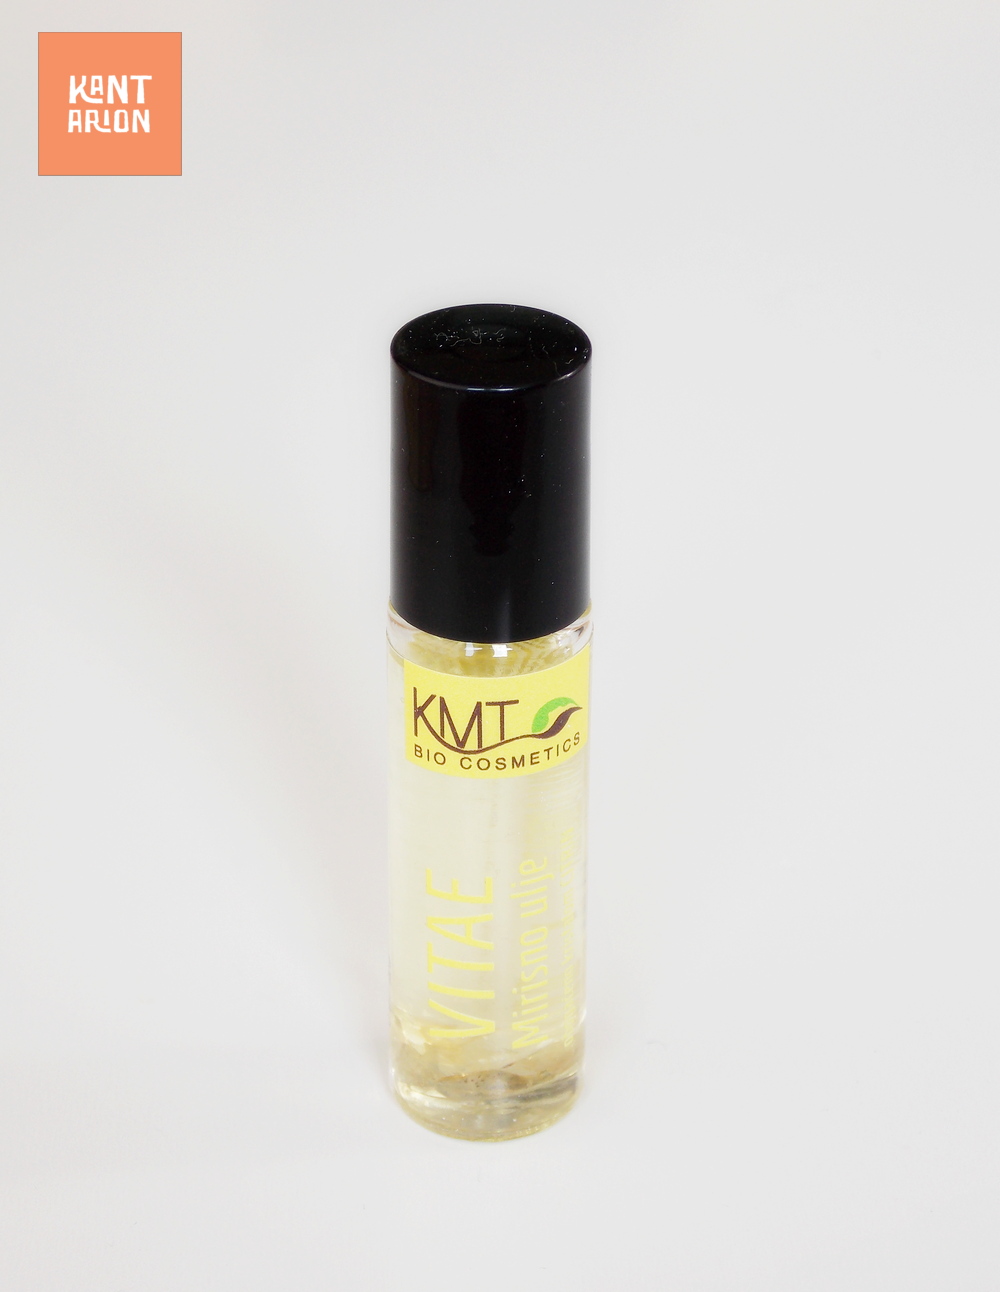 KMT BIOCOSMETIC – VITAE roll-on uljni parfem